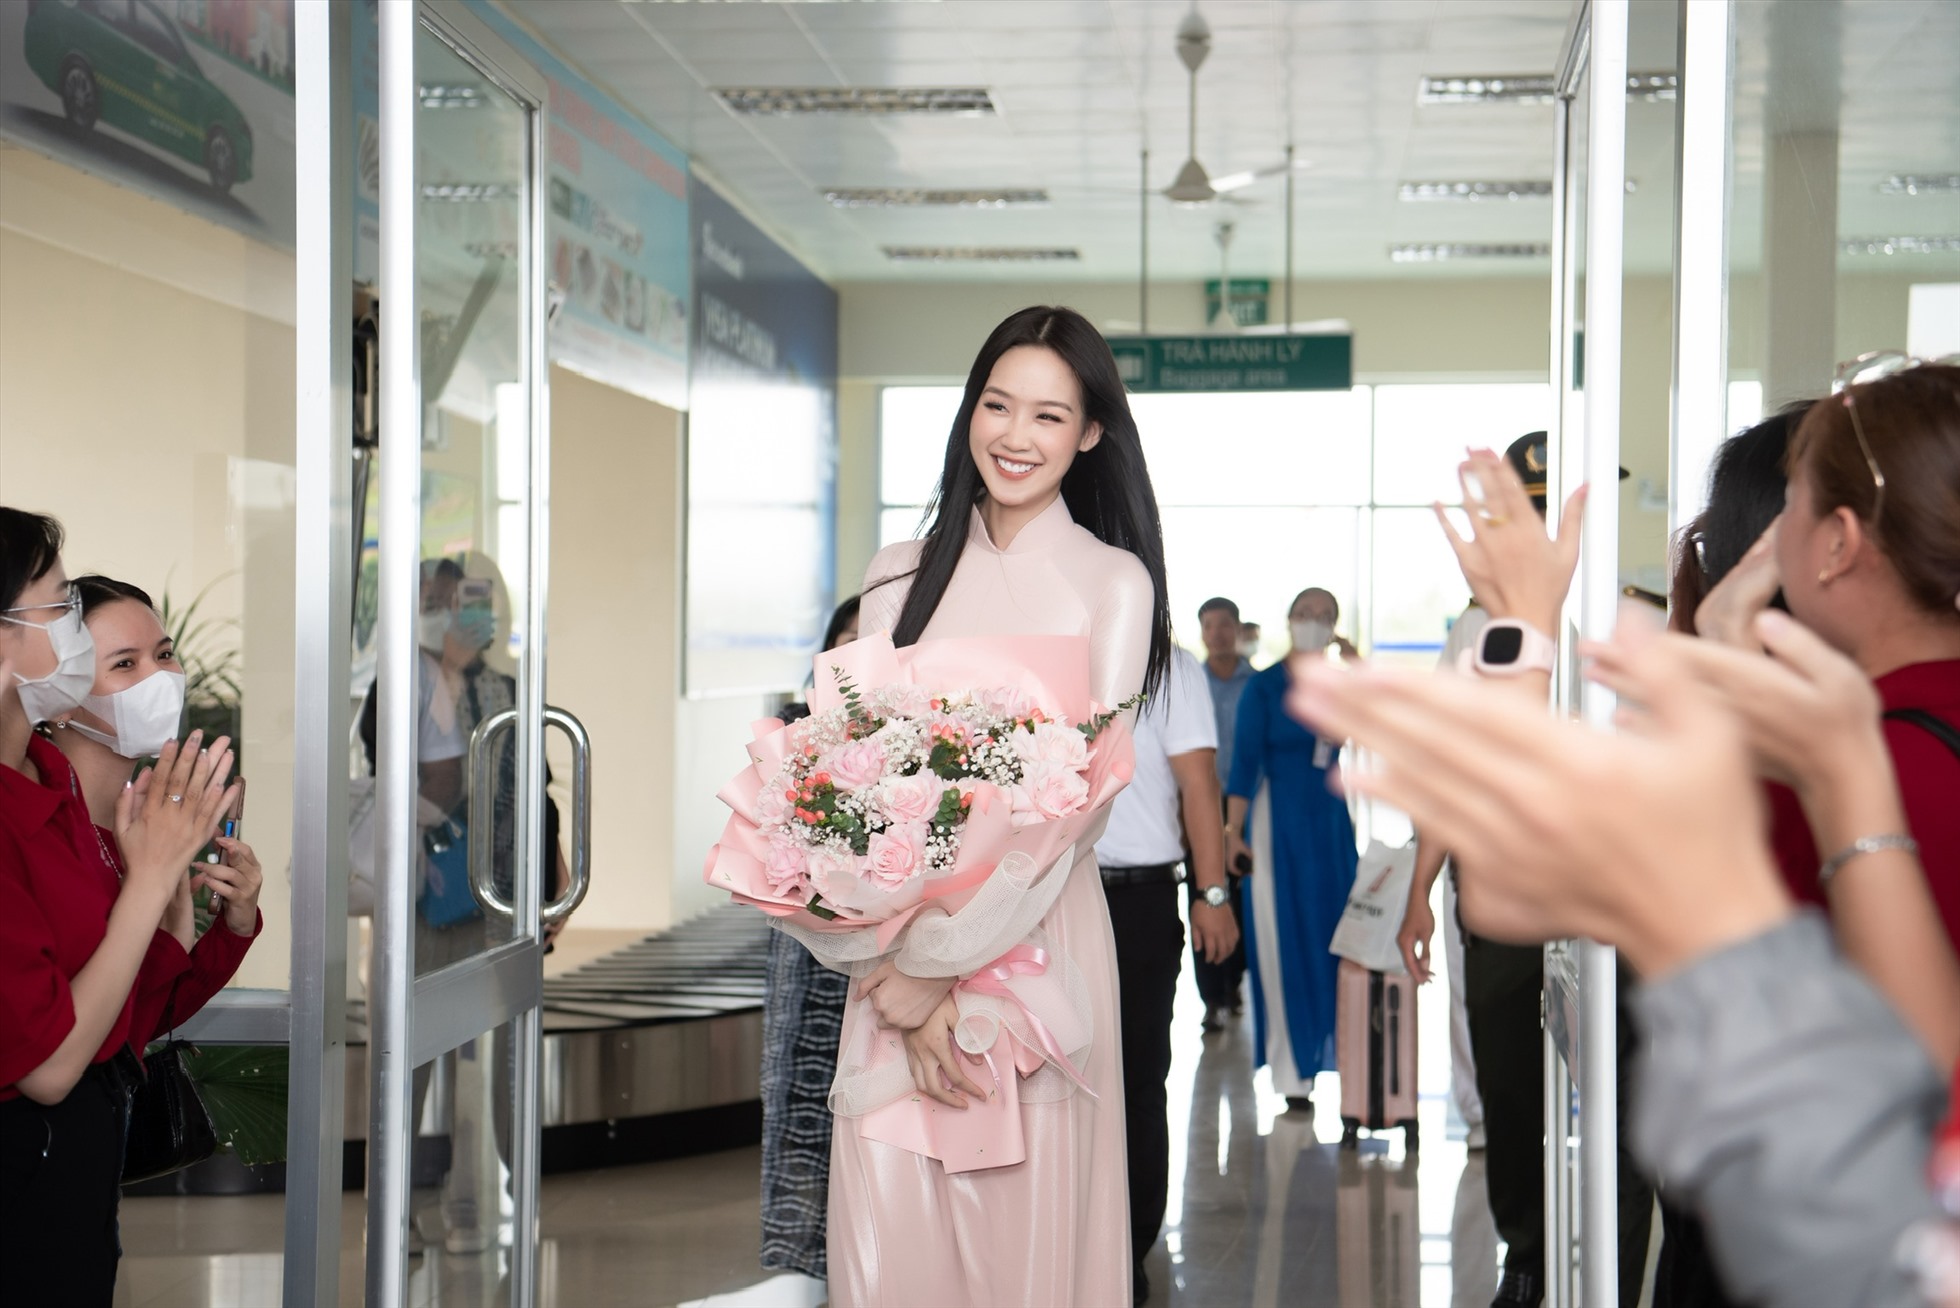 Xuất hiện tại sân bay, nàng hậu gây thiện cảm khi diện áo dài truyền thống màu hồng nhạt nhẹ nhàng. Ảnh: Sen Vàng.